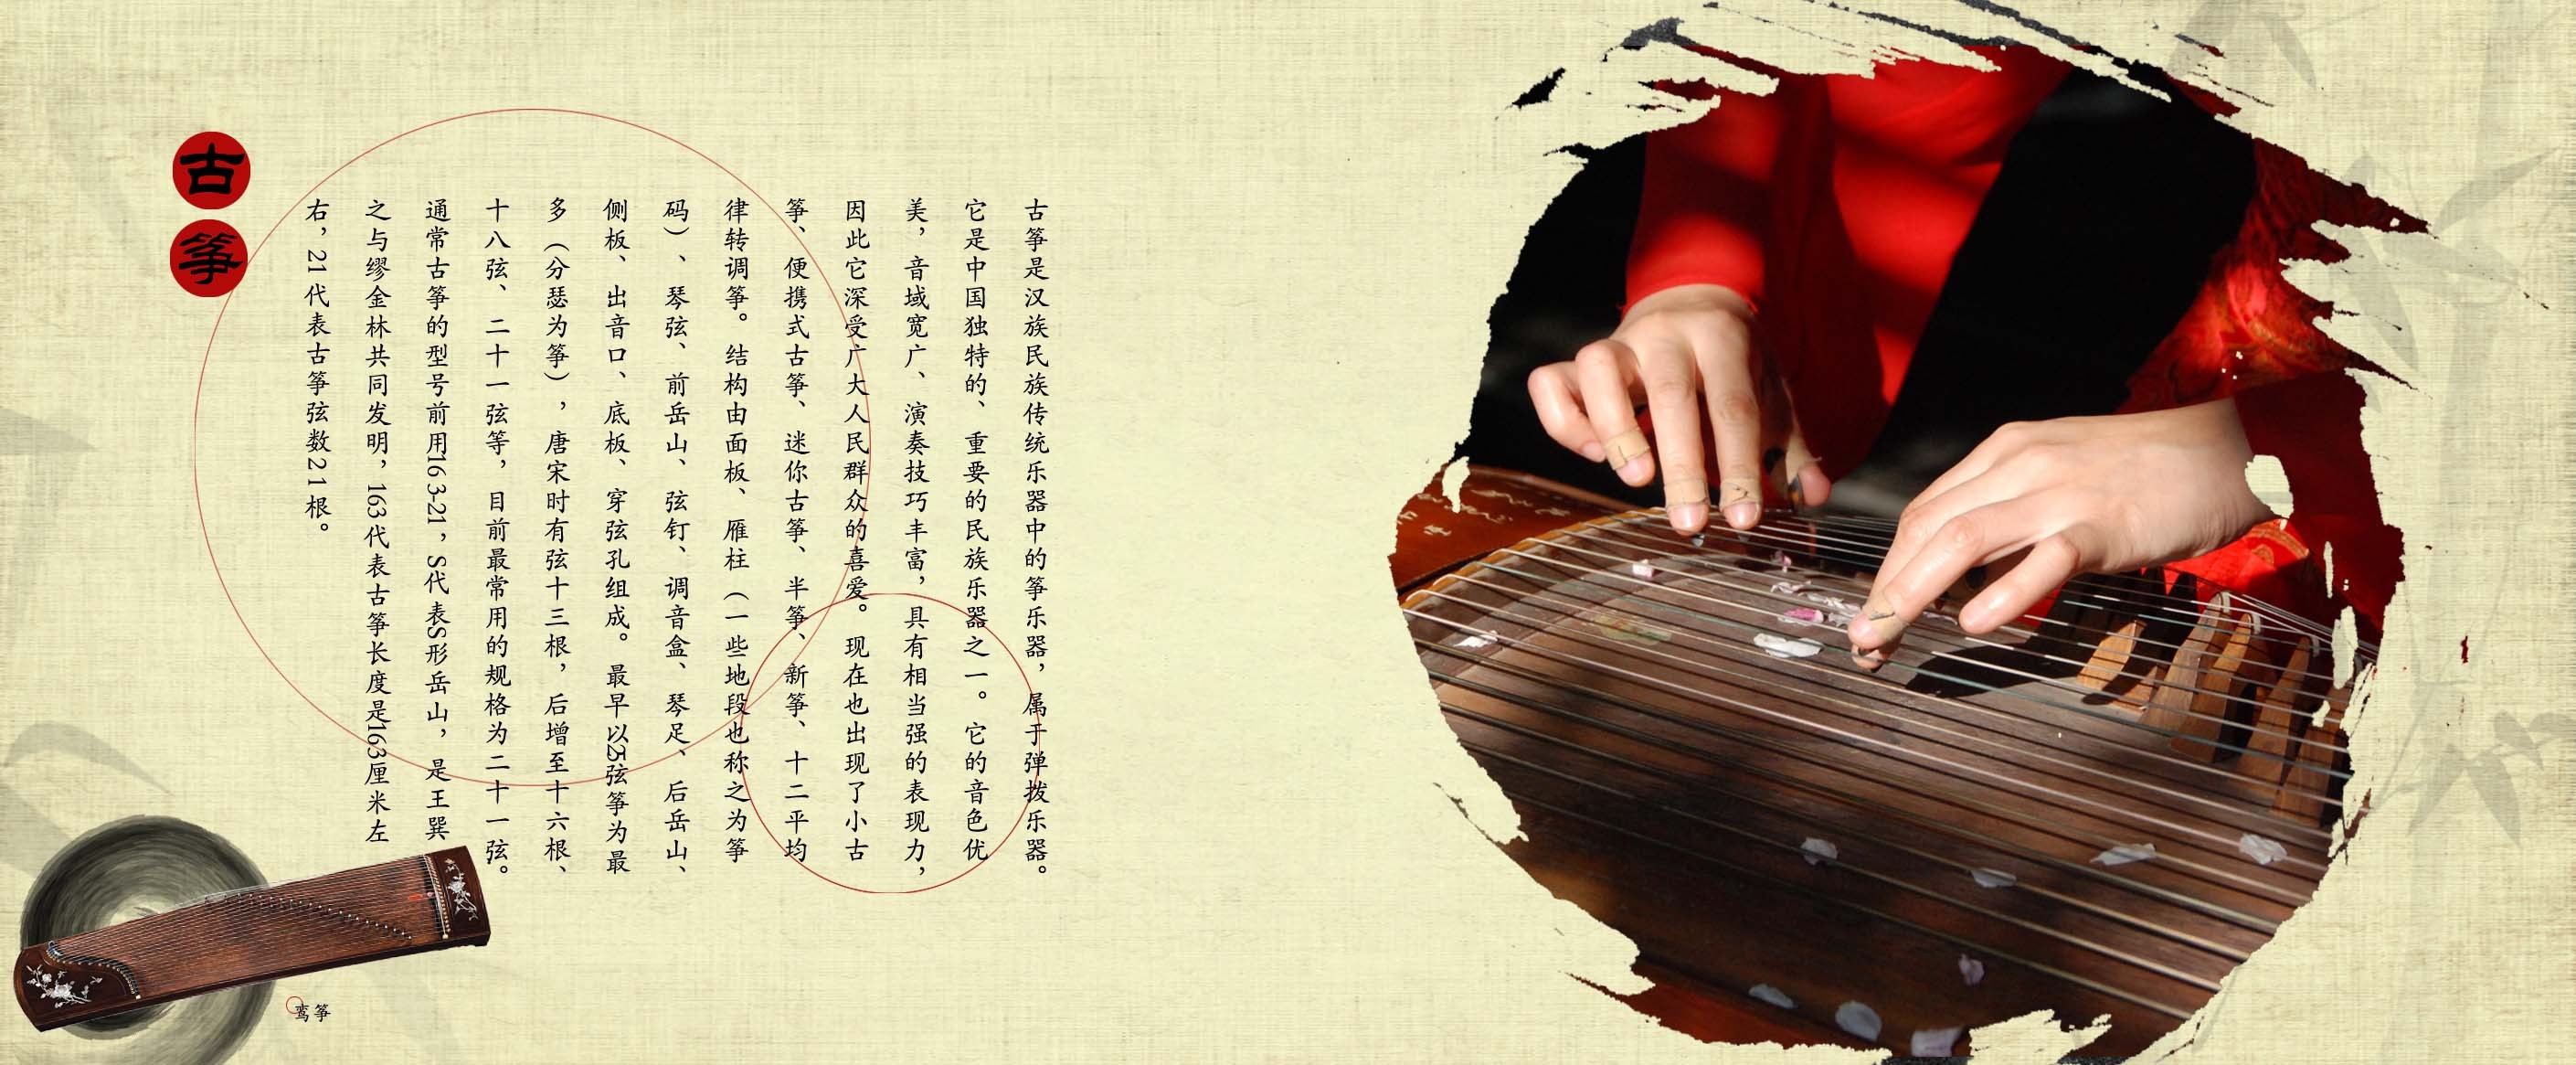 展现中国古代音乐发展脉络 “天地同和——中国古代乐器展”亮相国博_国内 _ 文汇网